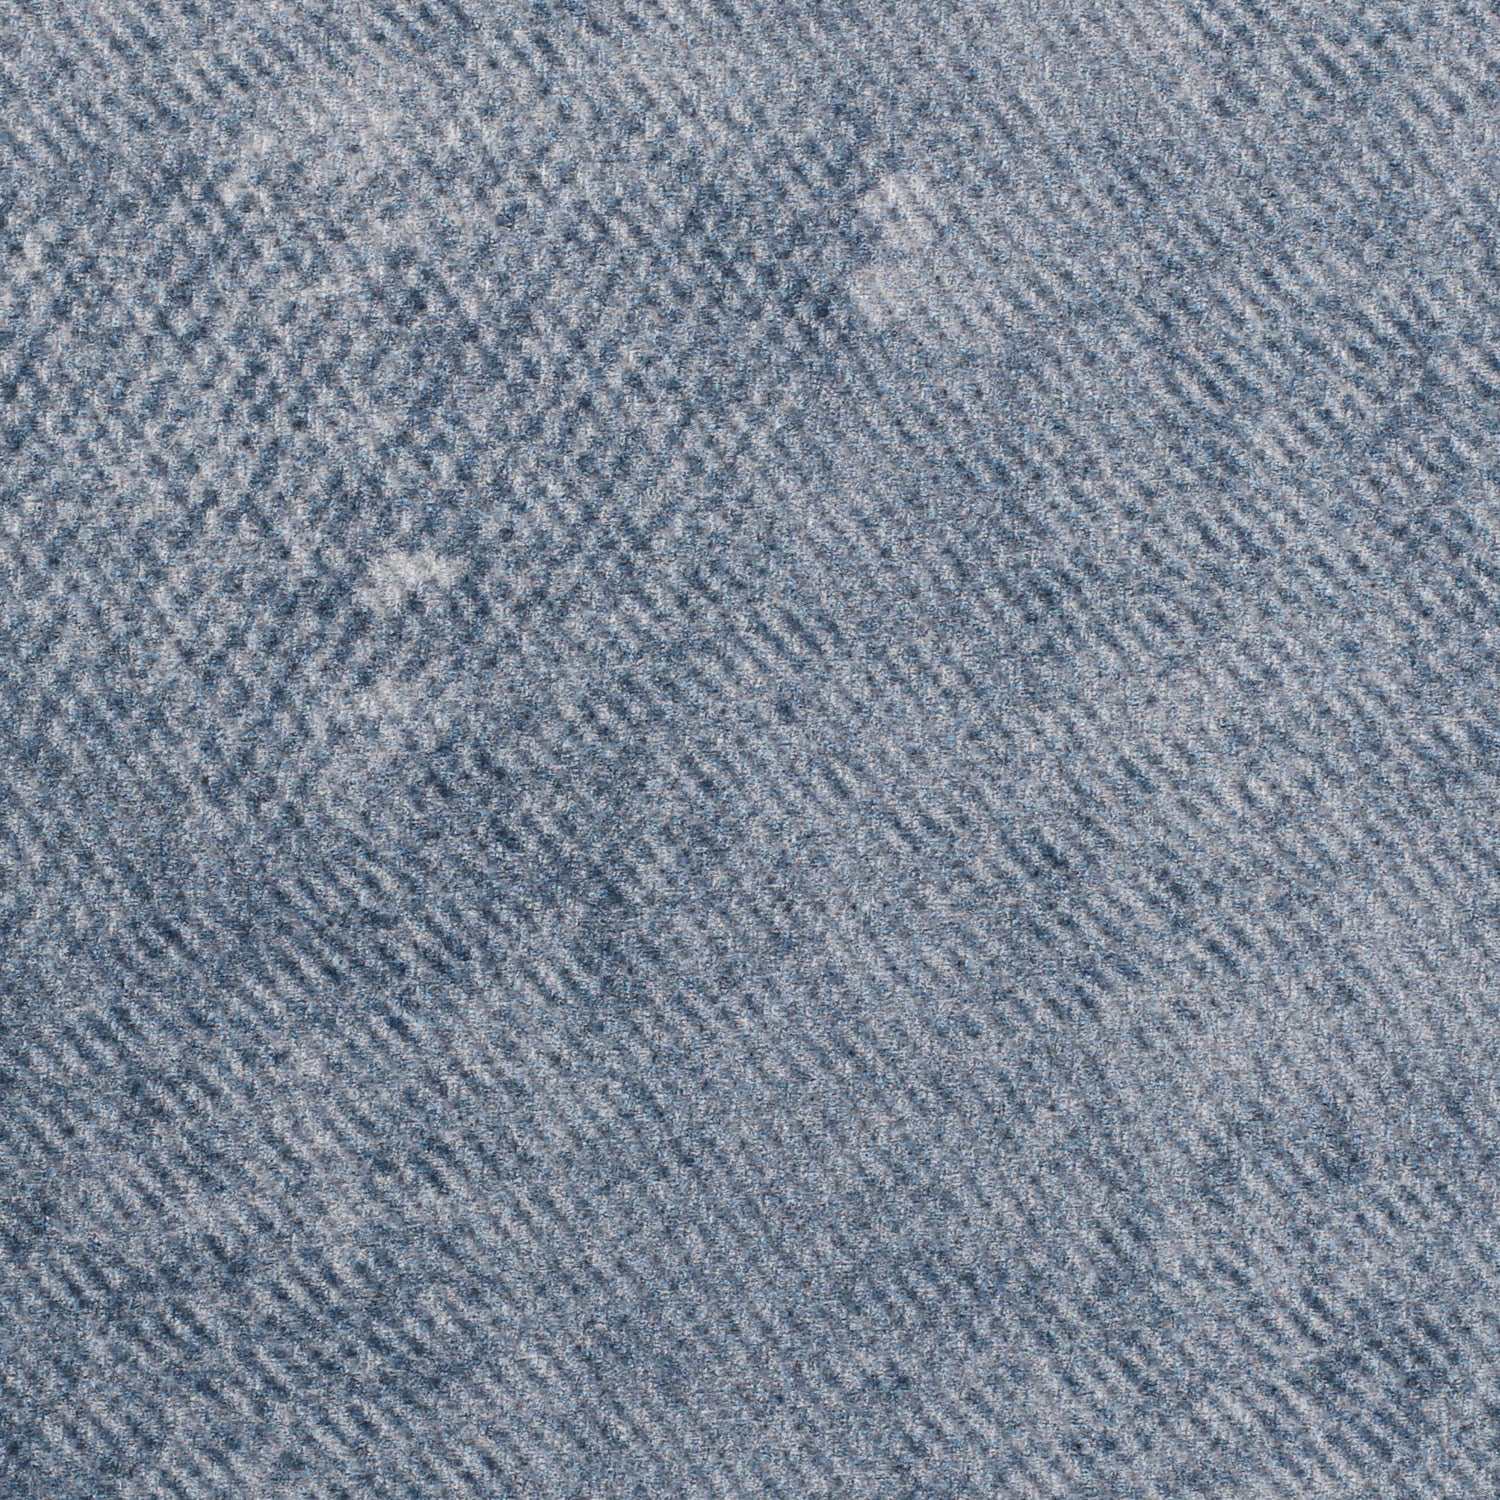 Dark blue washed denim stock image. Image of washed - 112415167